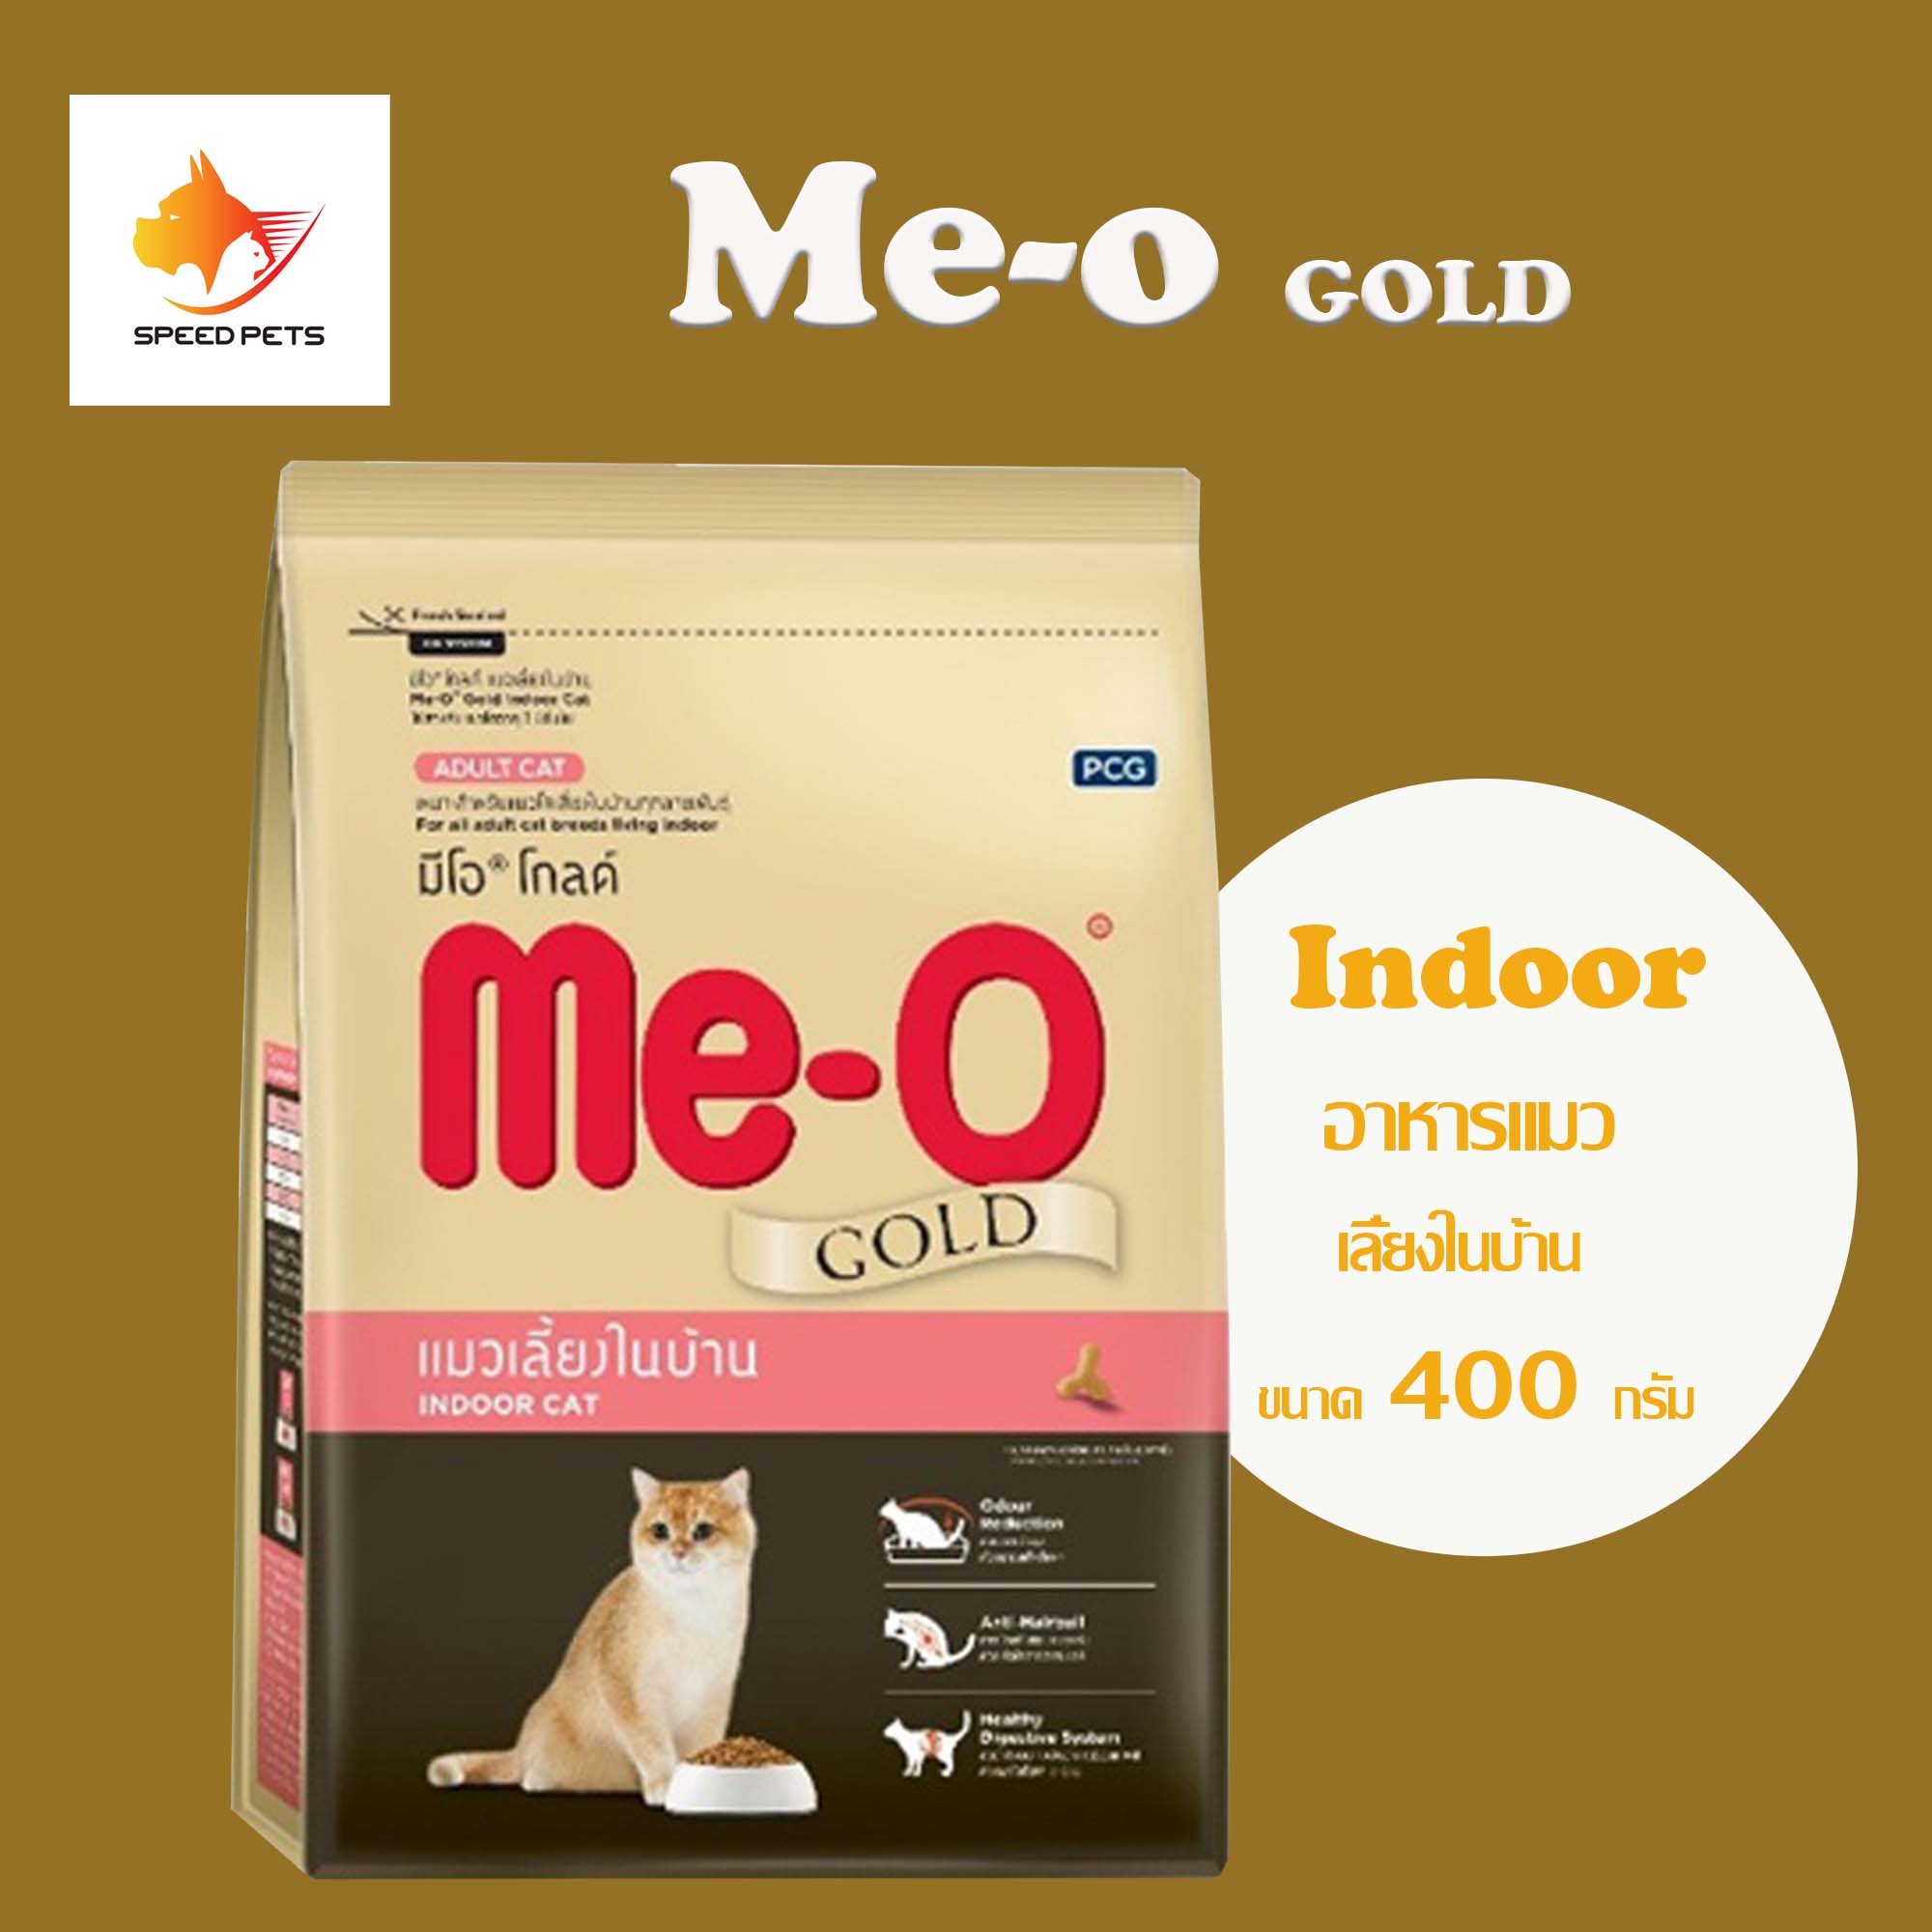 Me-o Gold Indoor Cat Food 400g มีโอ โกลด์ อาหารแมว เลี้ยงในบ้าน อินดอร์ 400 กรัม